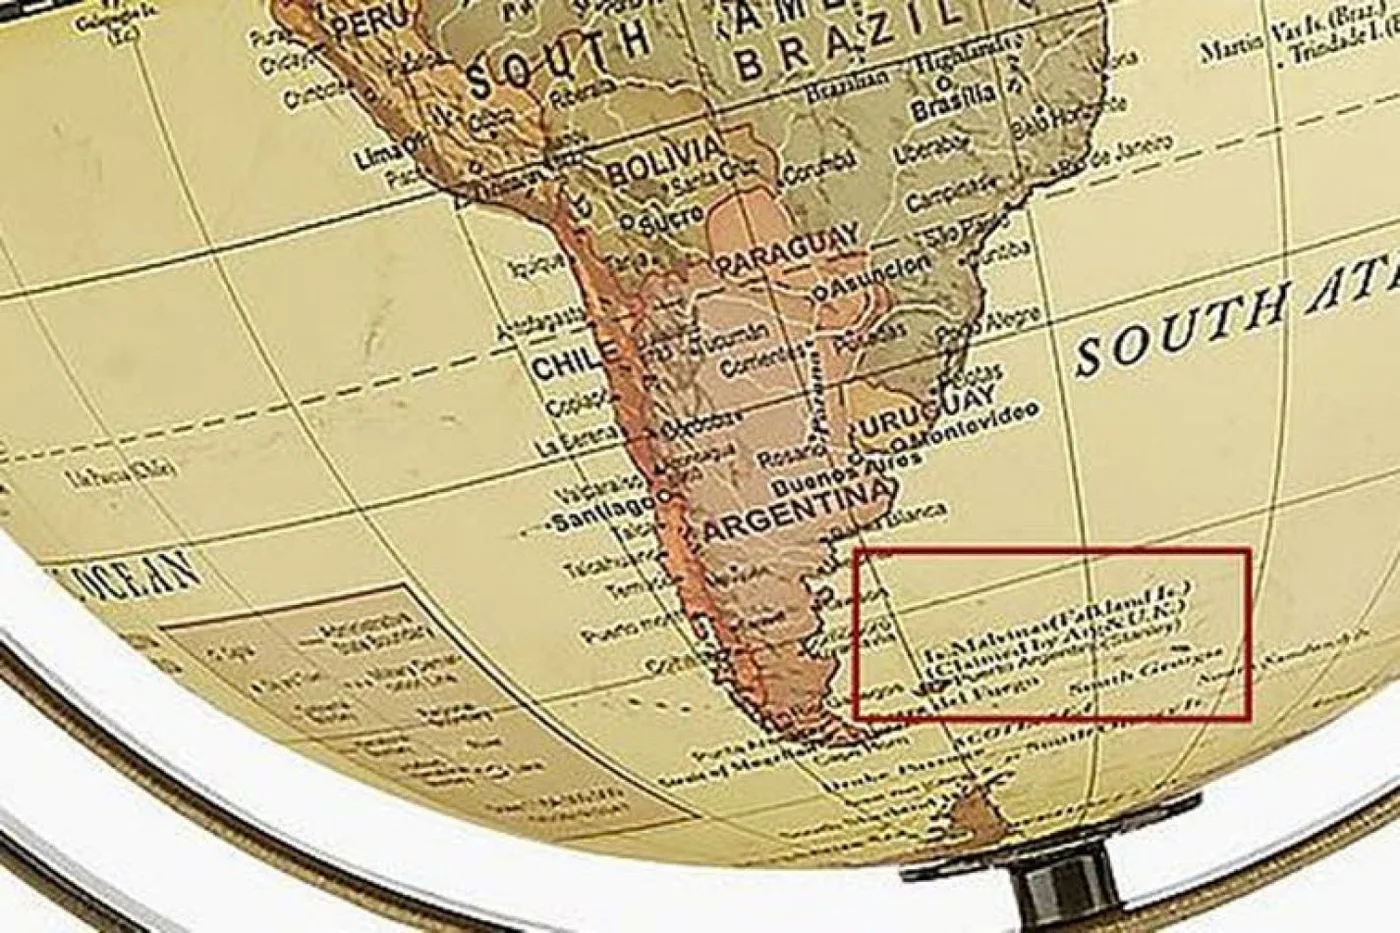 Londres: polémica con un globo terráqueo que llama Malvinas a las islas del Atlántico Sur